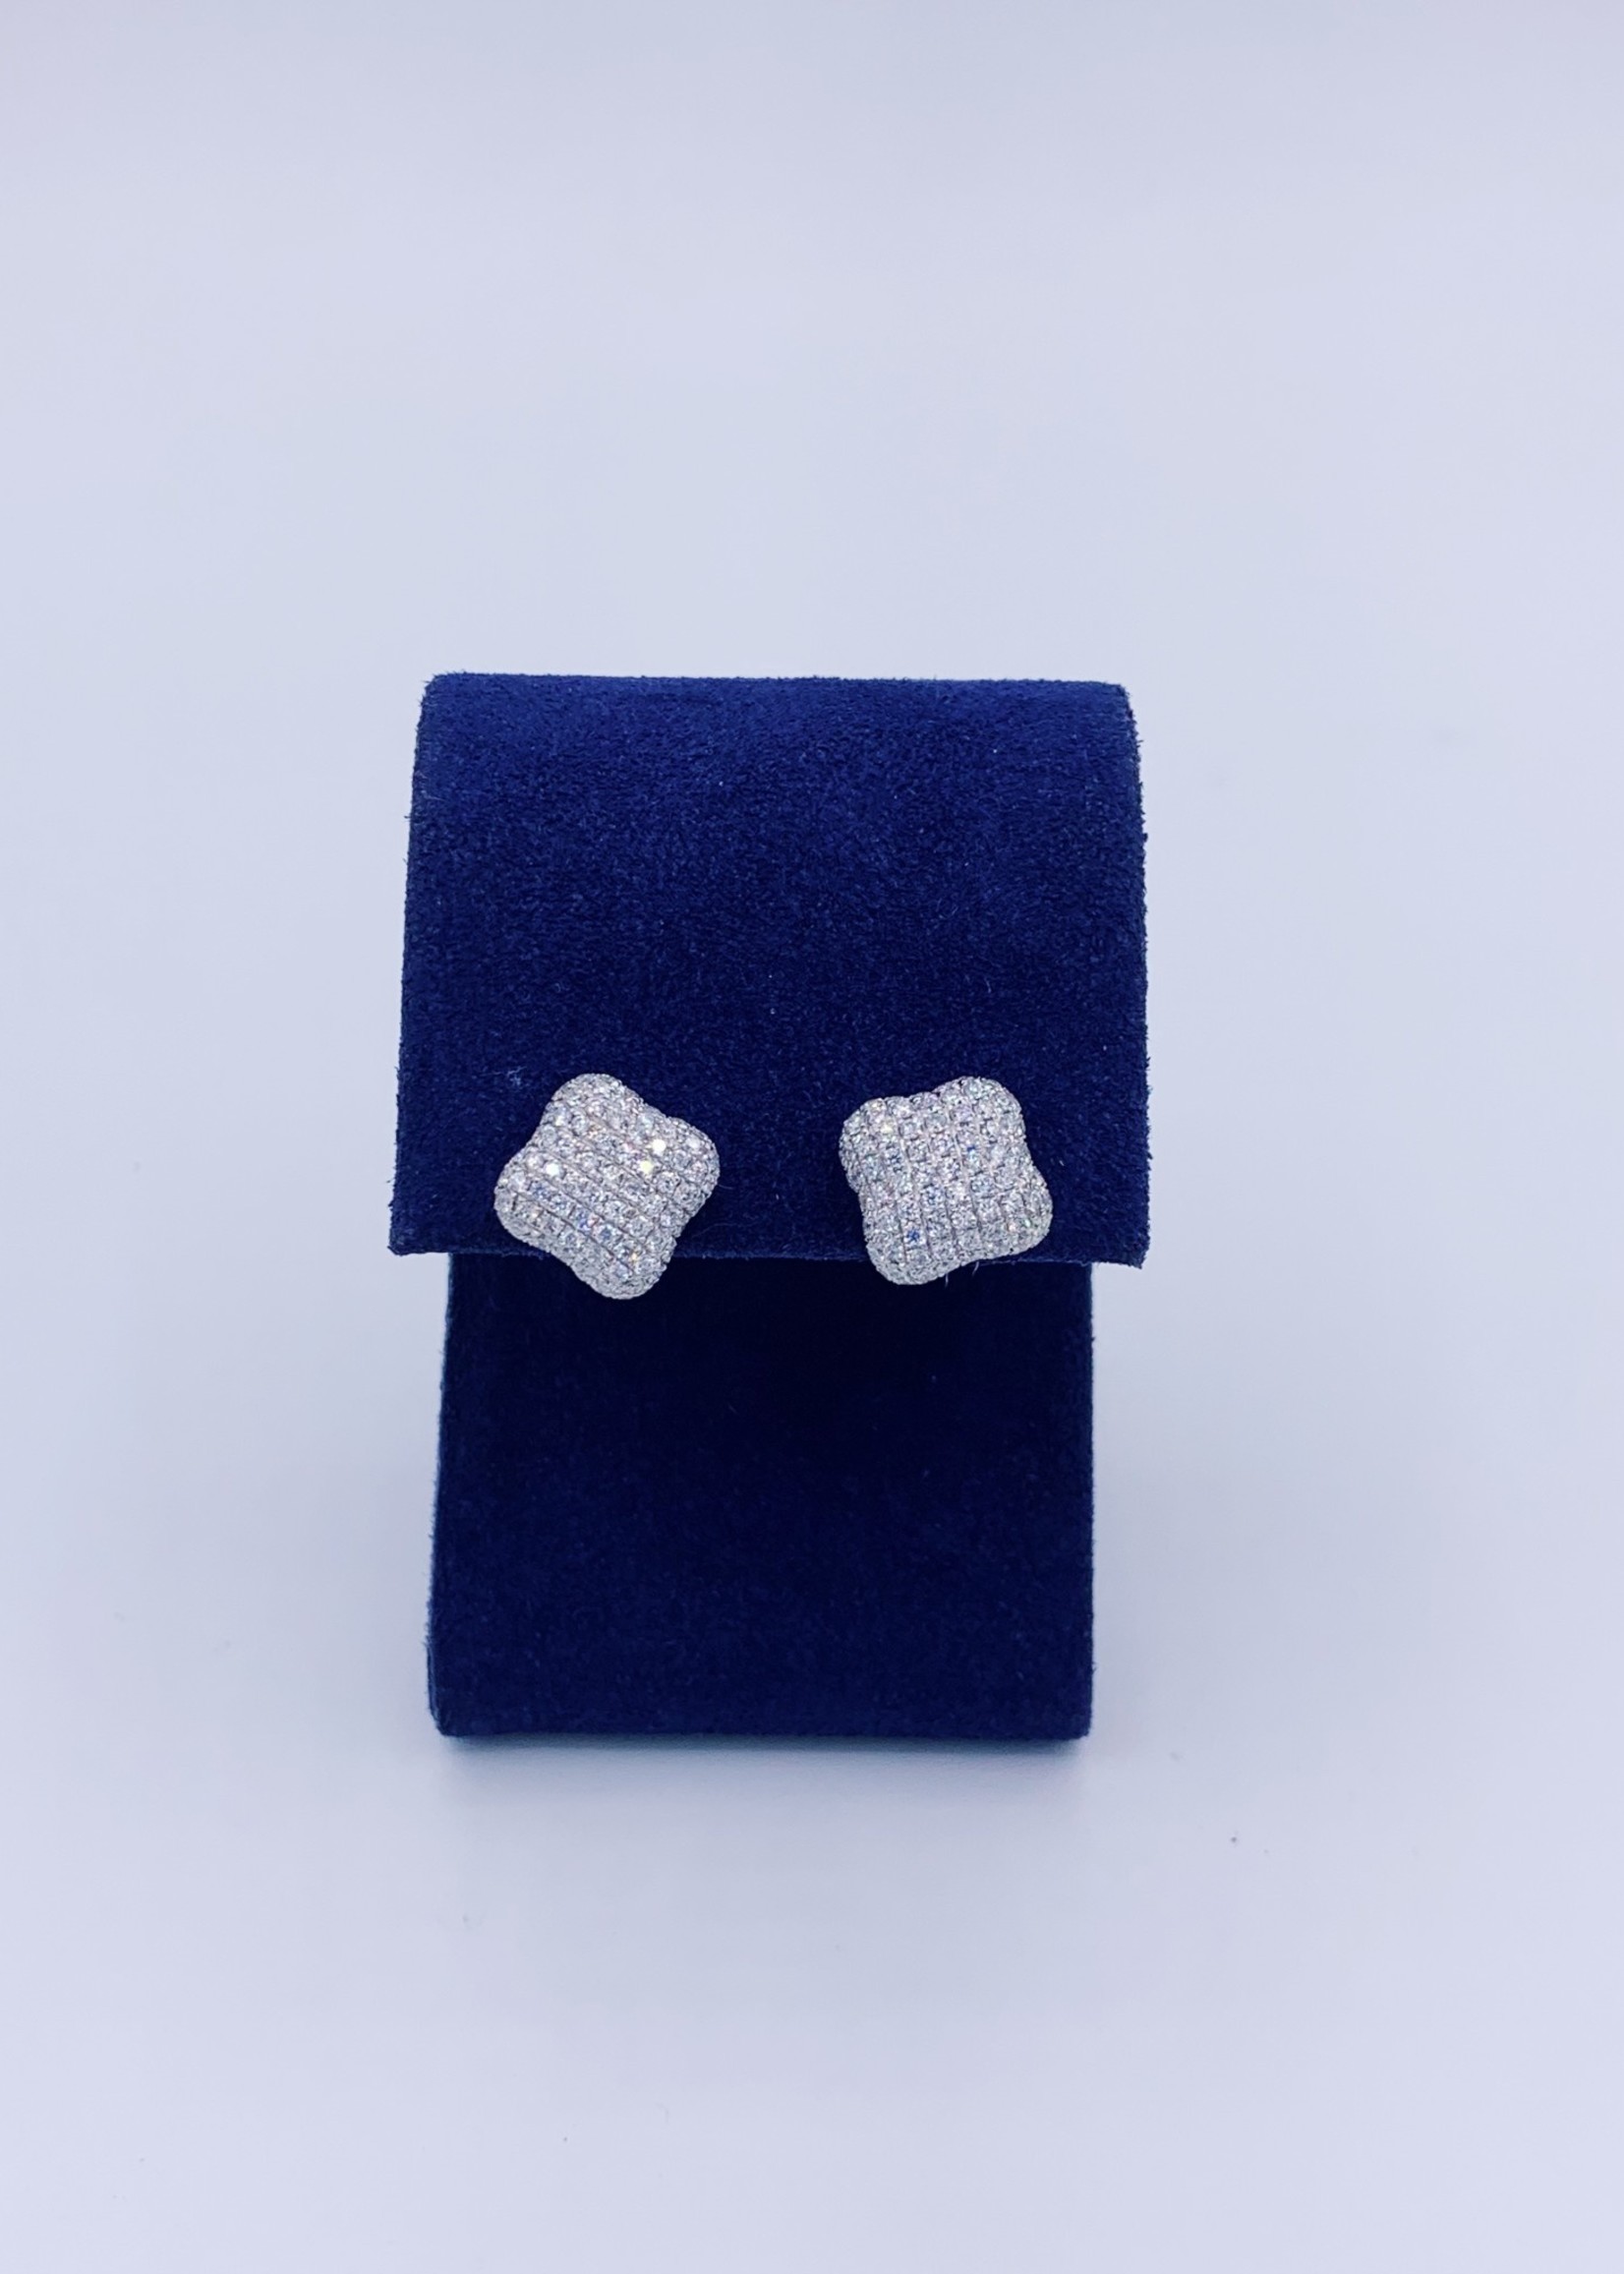 Diamond Cluster earring